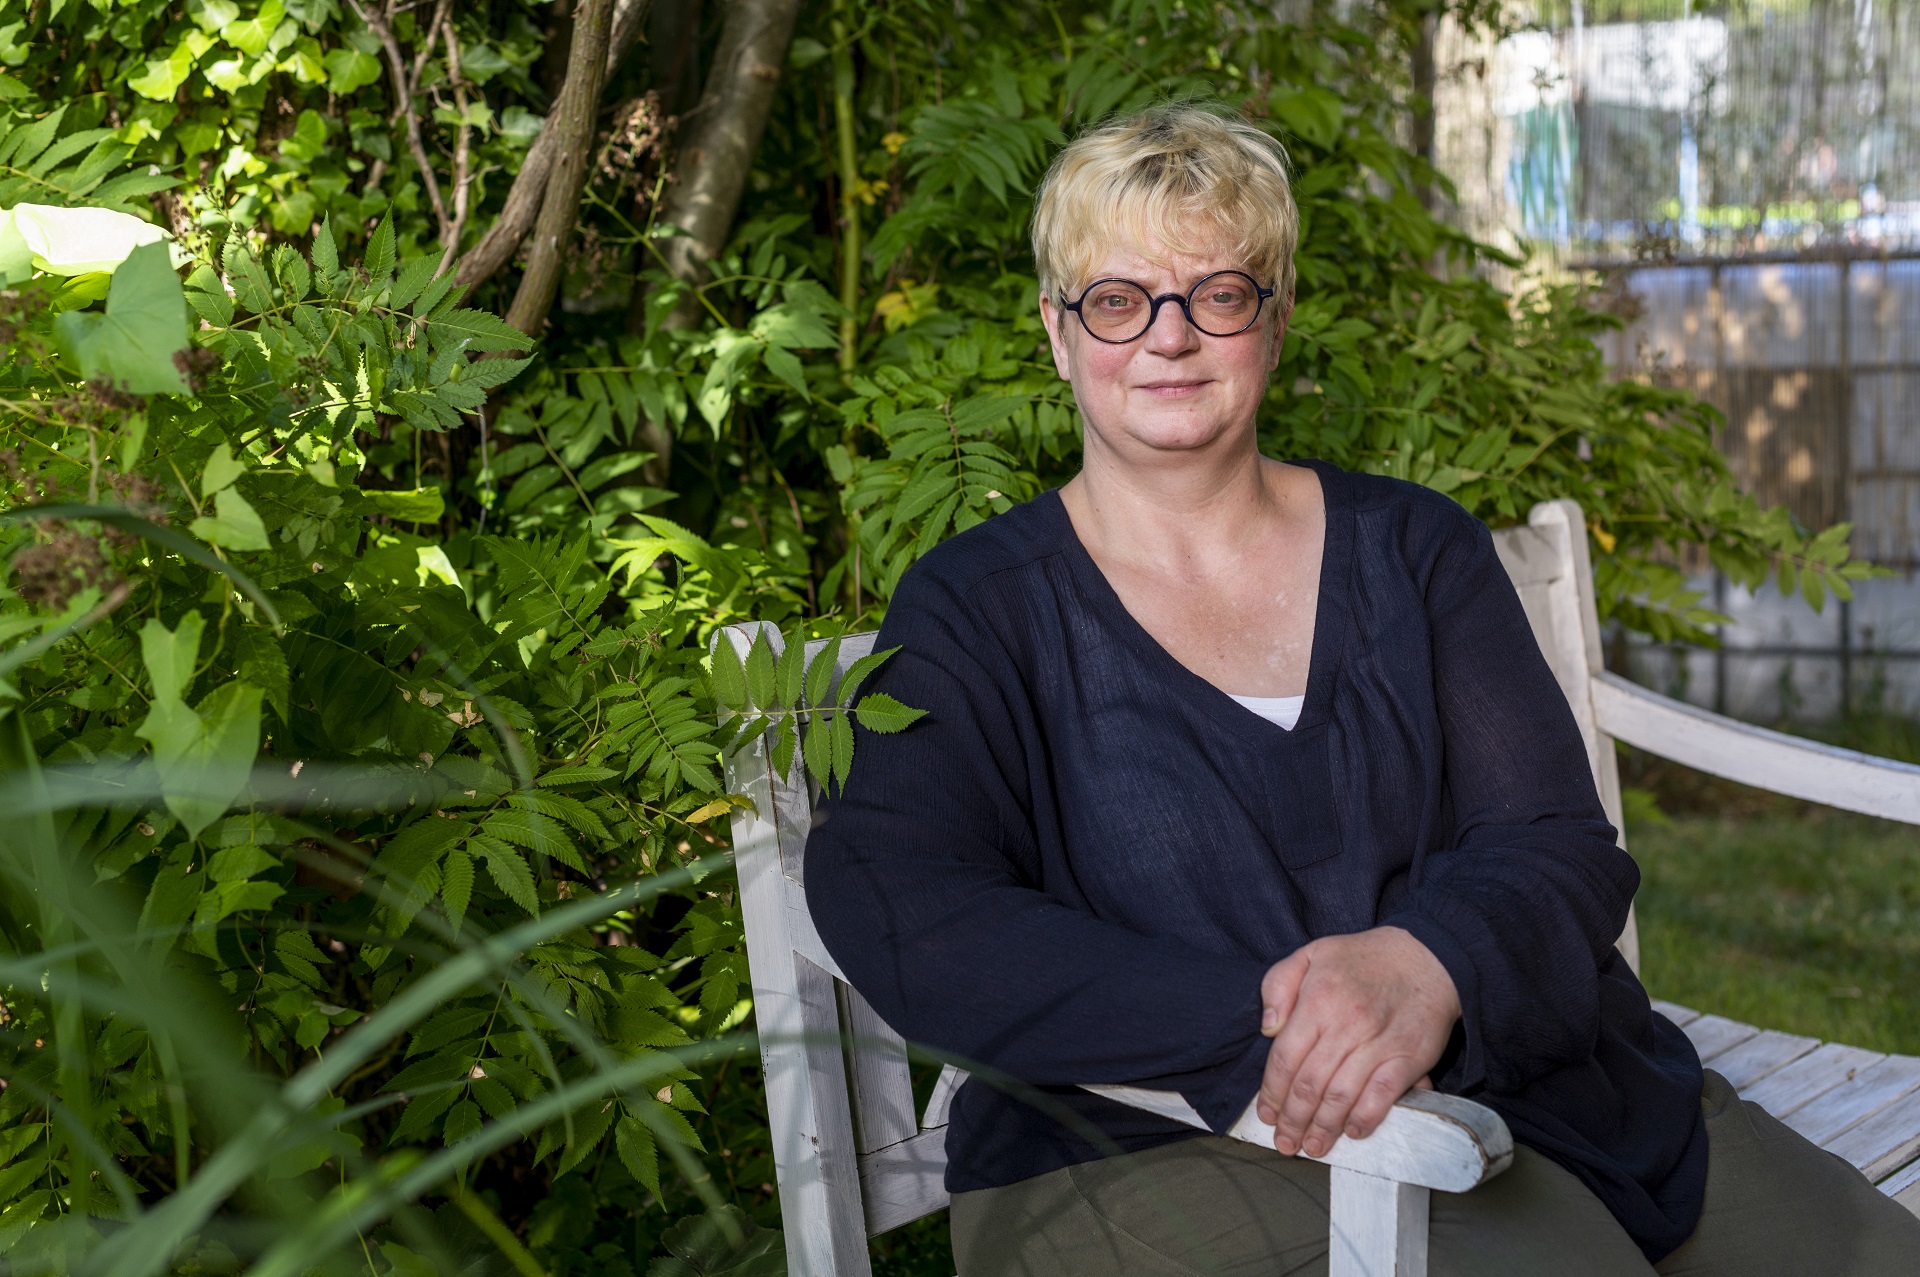 Anja Faust-Spanier, chef et propriétaire de Landhaus Spanier, est assise sur un banc blanc. Elle porte des lunettes rondes noires, un chemisier noir et un pantalon vert foncé. Il y a des plantes vertes en arrière-plan.